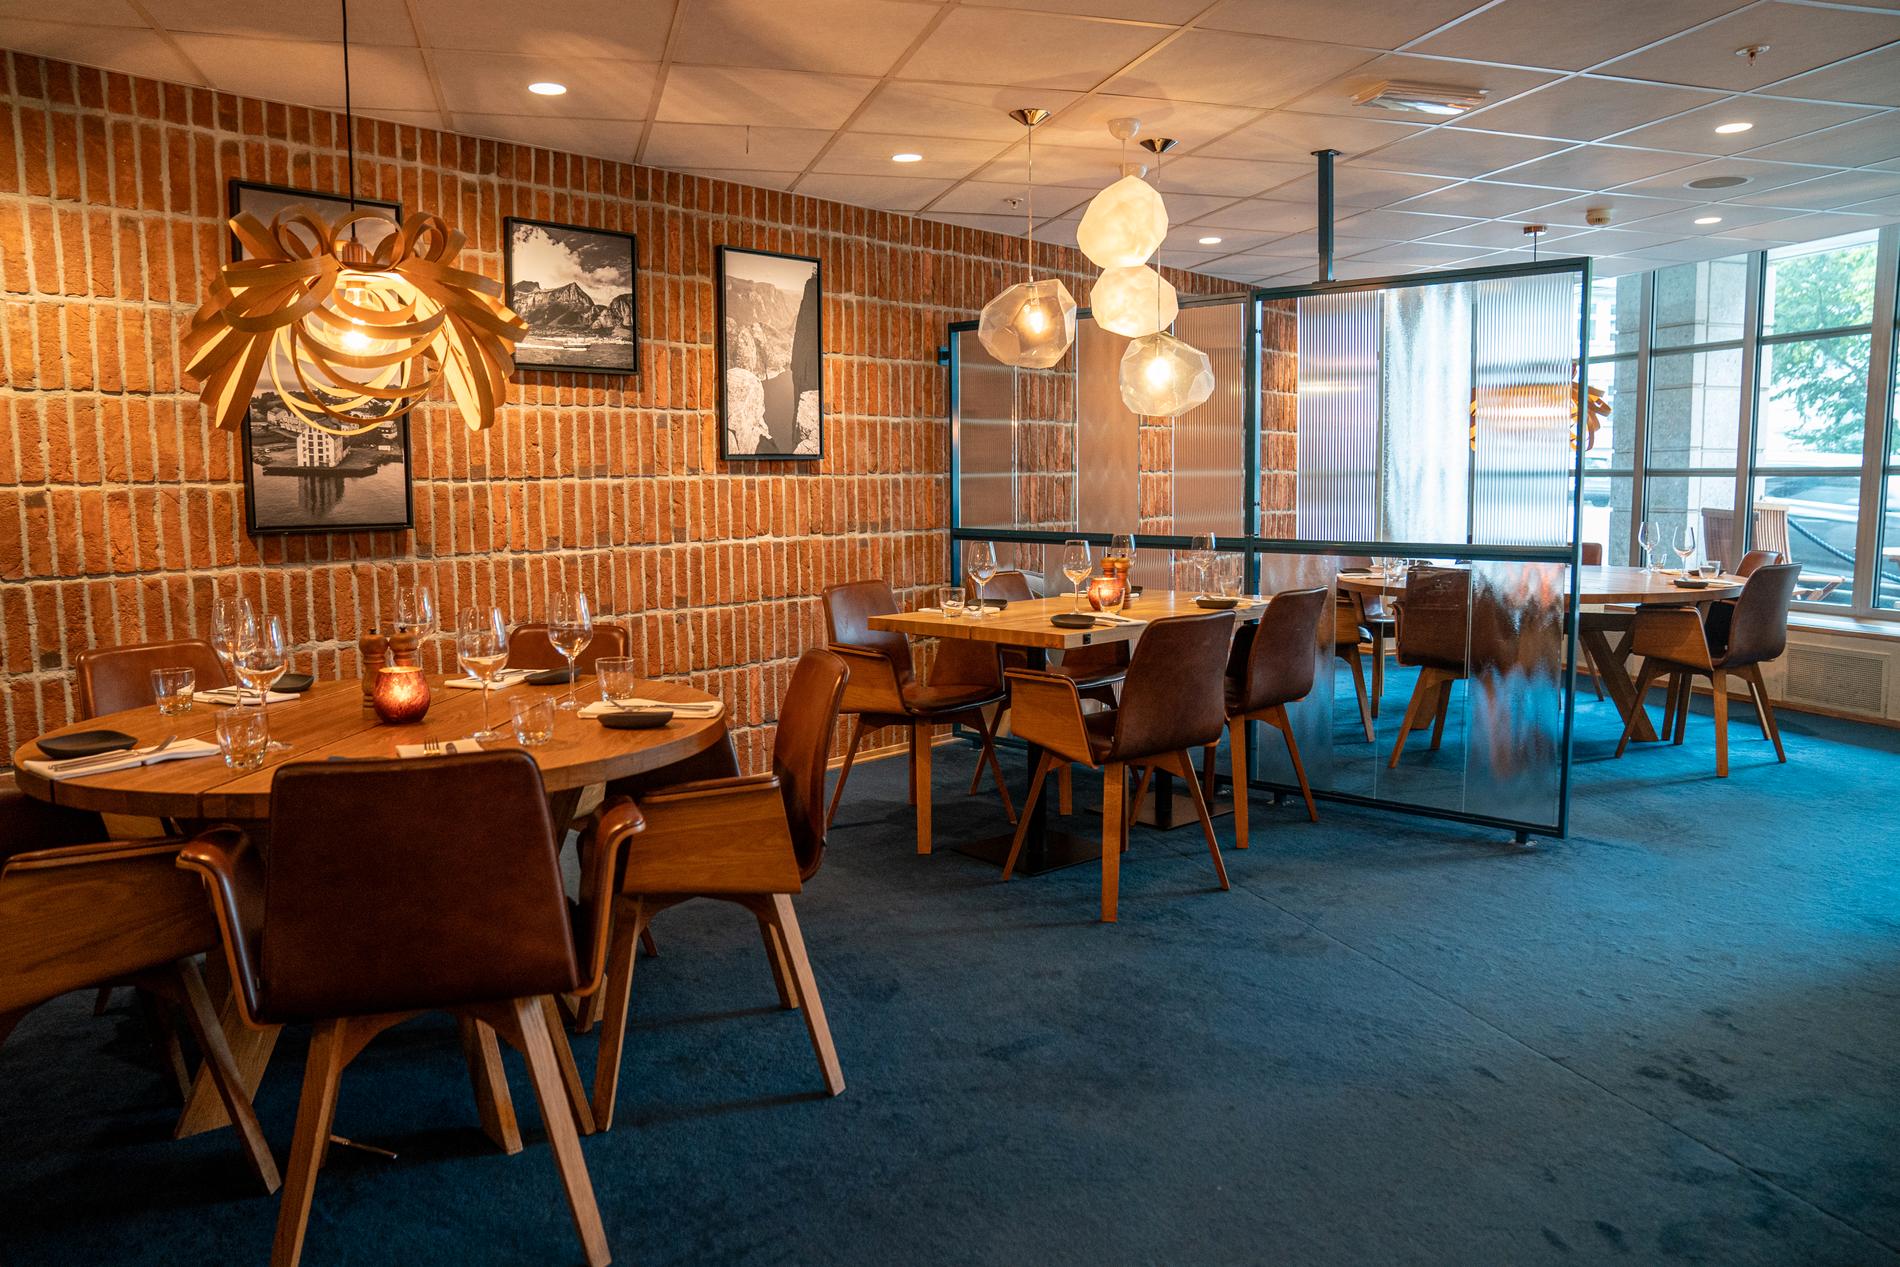 Restauranten er luftig og åpen, med et moderne nordisk preg.